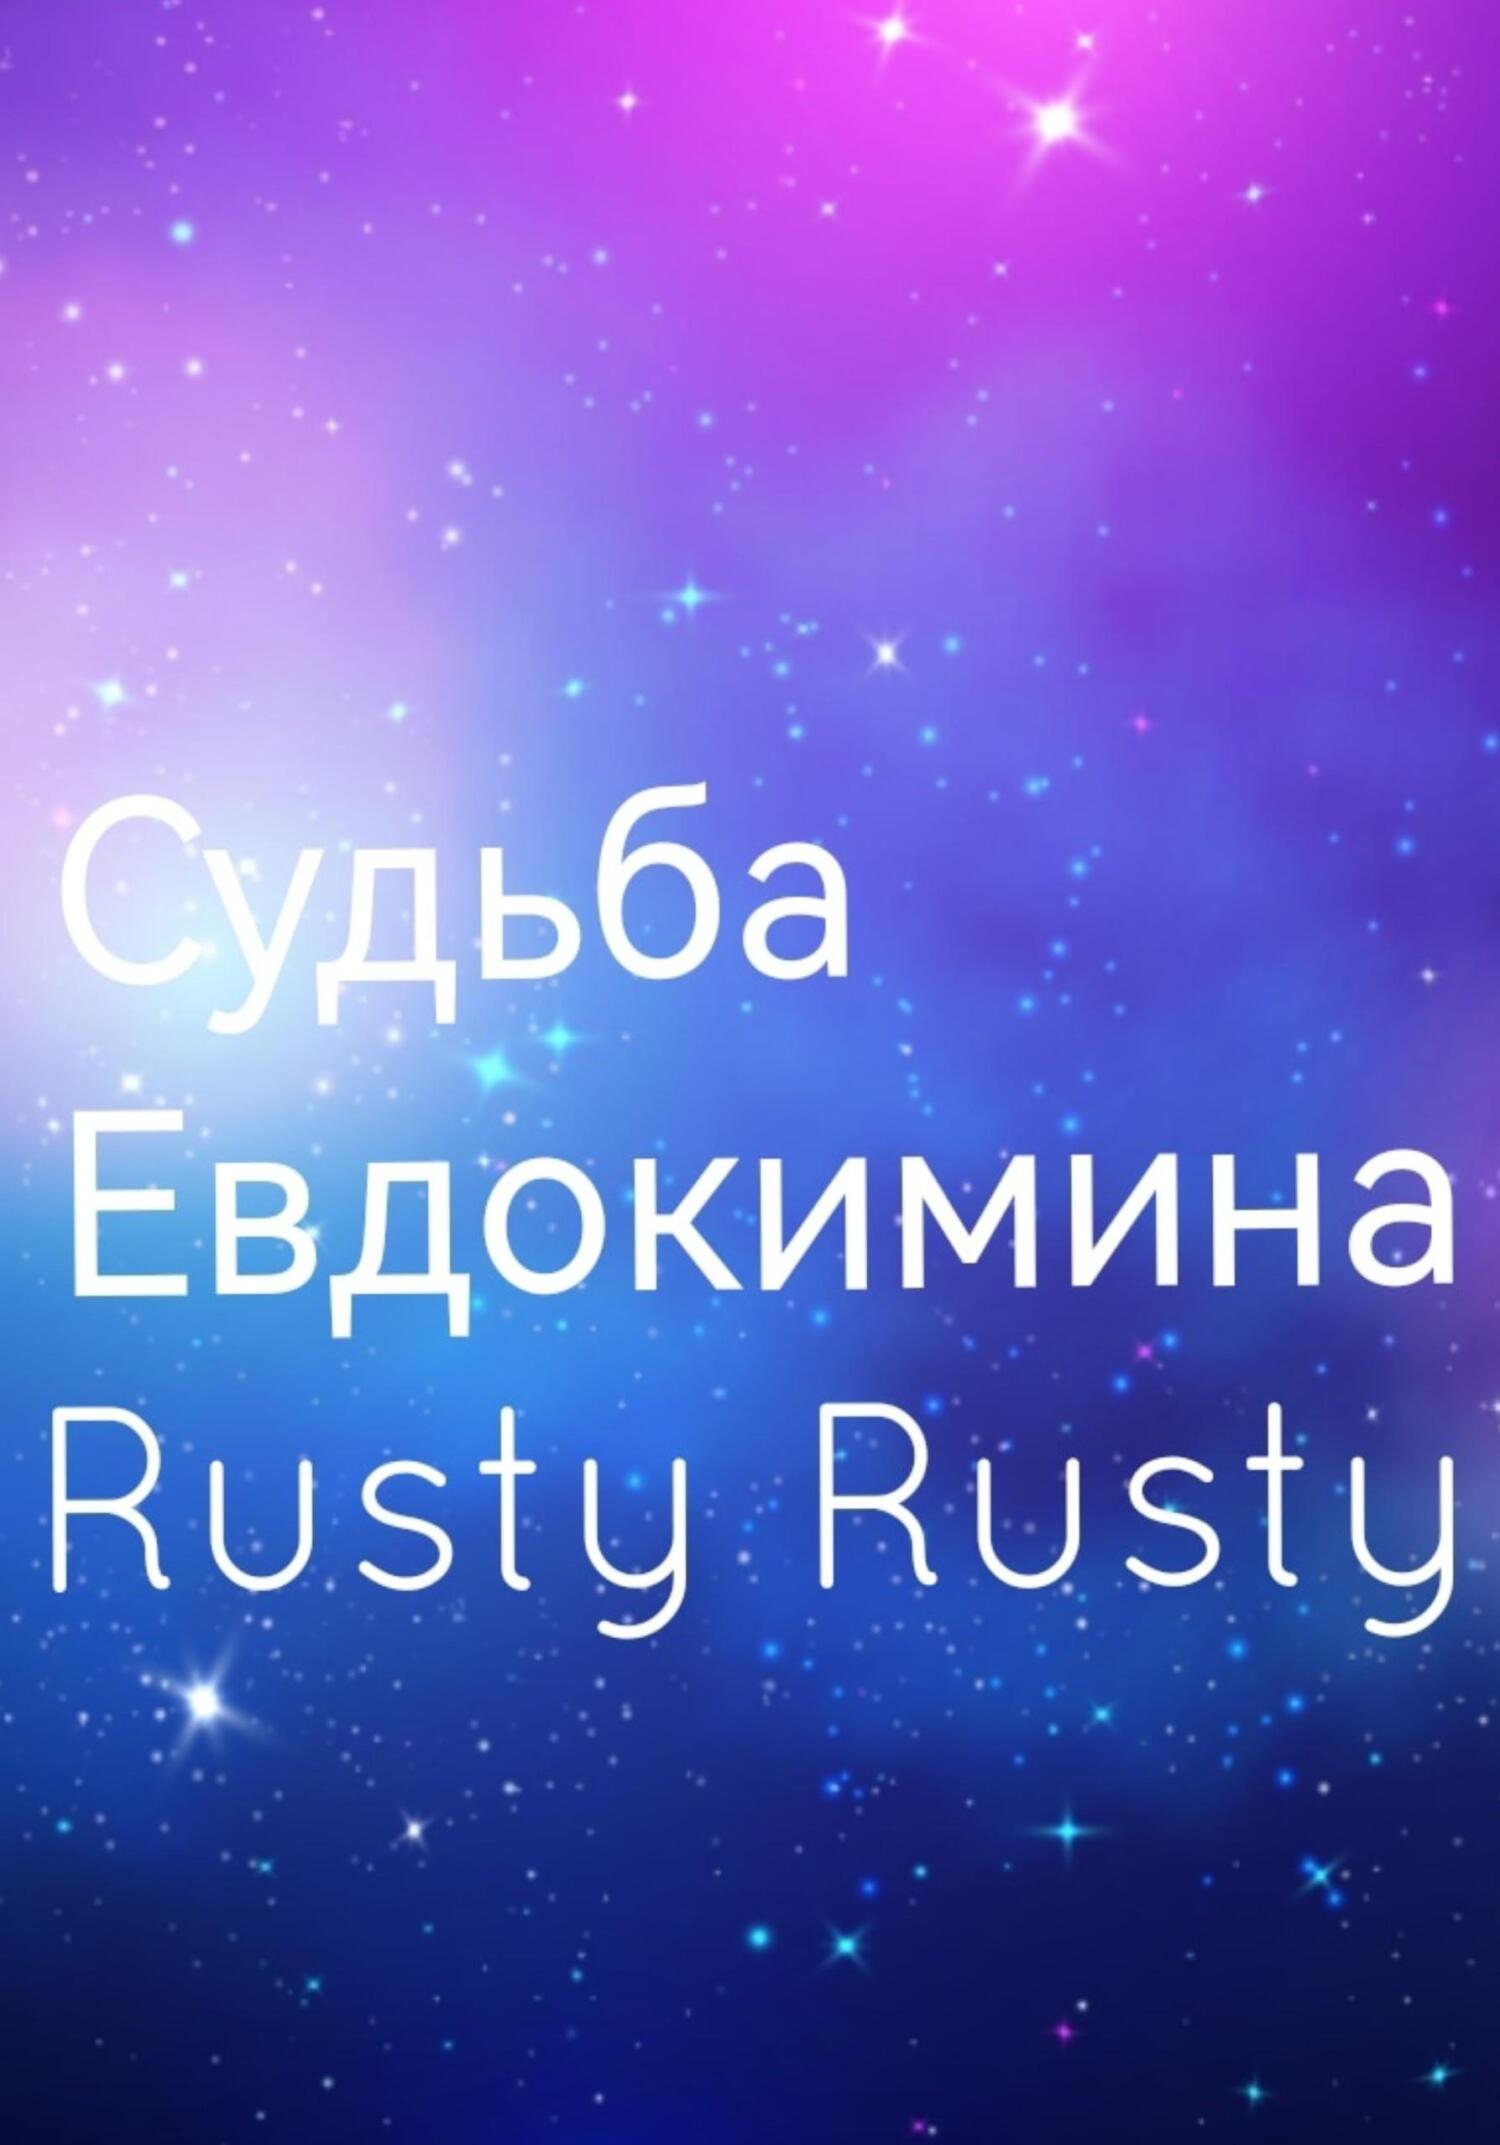 Судьба Евдокимина - Rusty Rusty